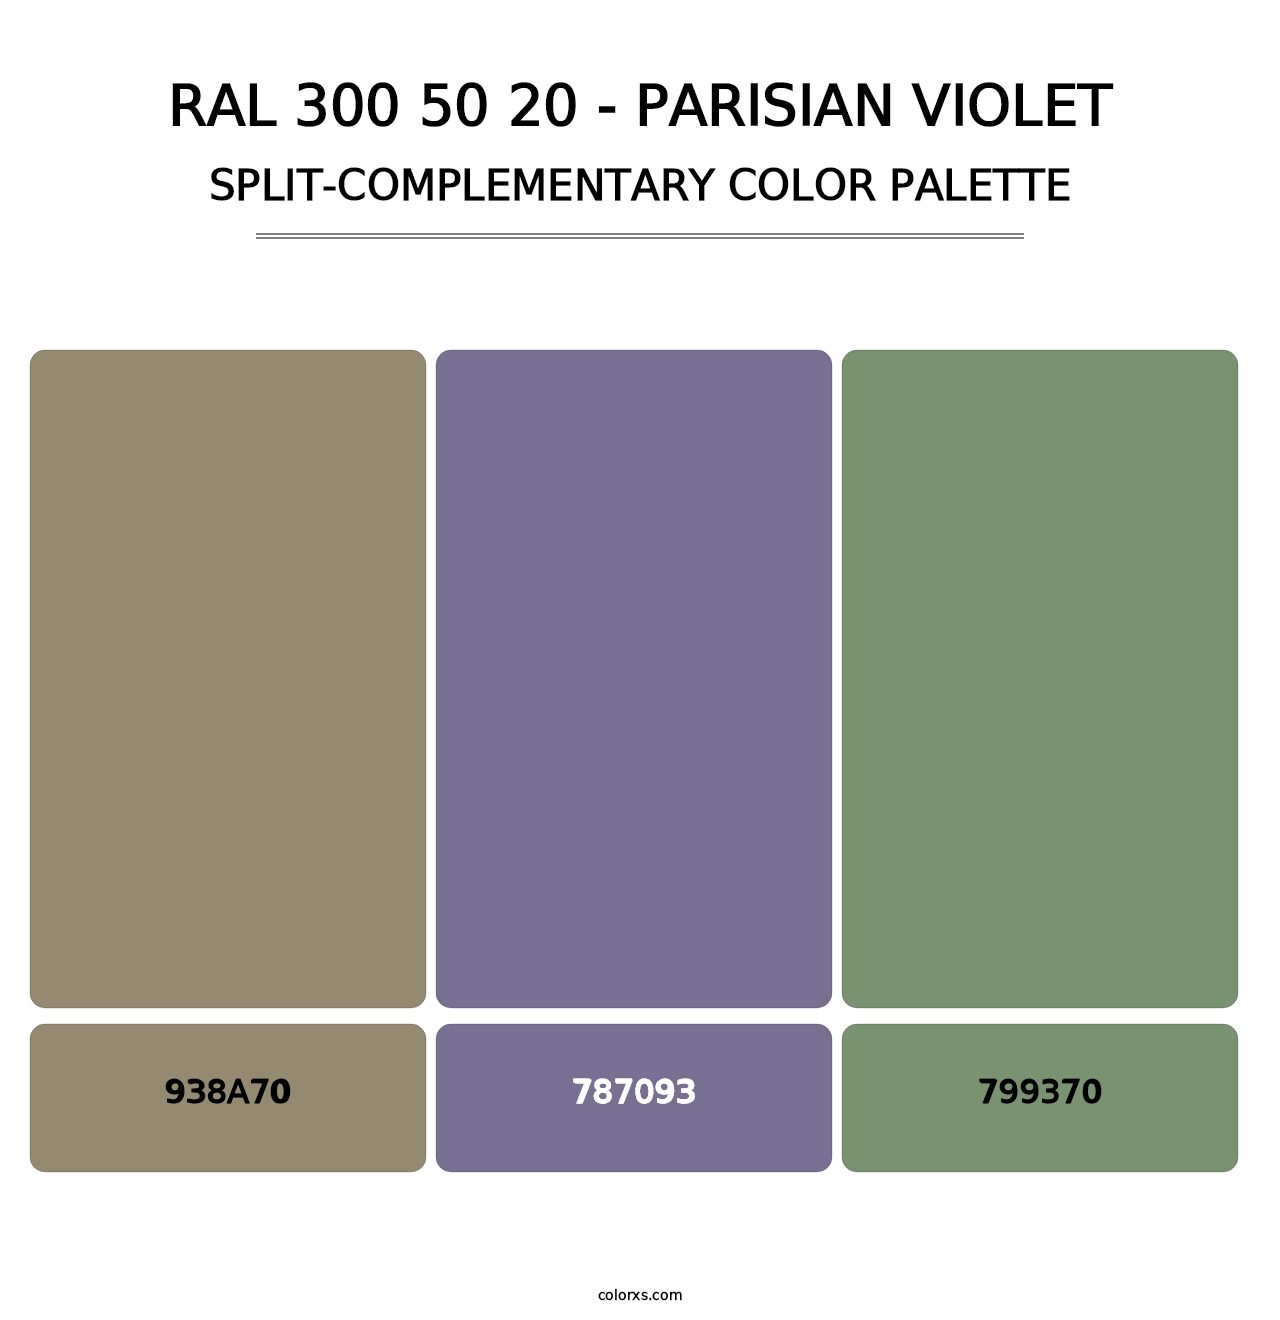 RAL 300 50 20 - Parisian Violet - Split-Complementary Color Palette